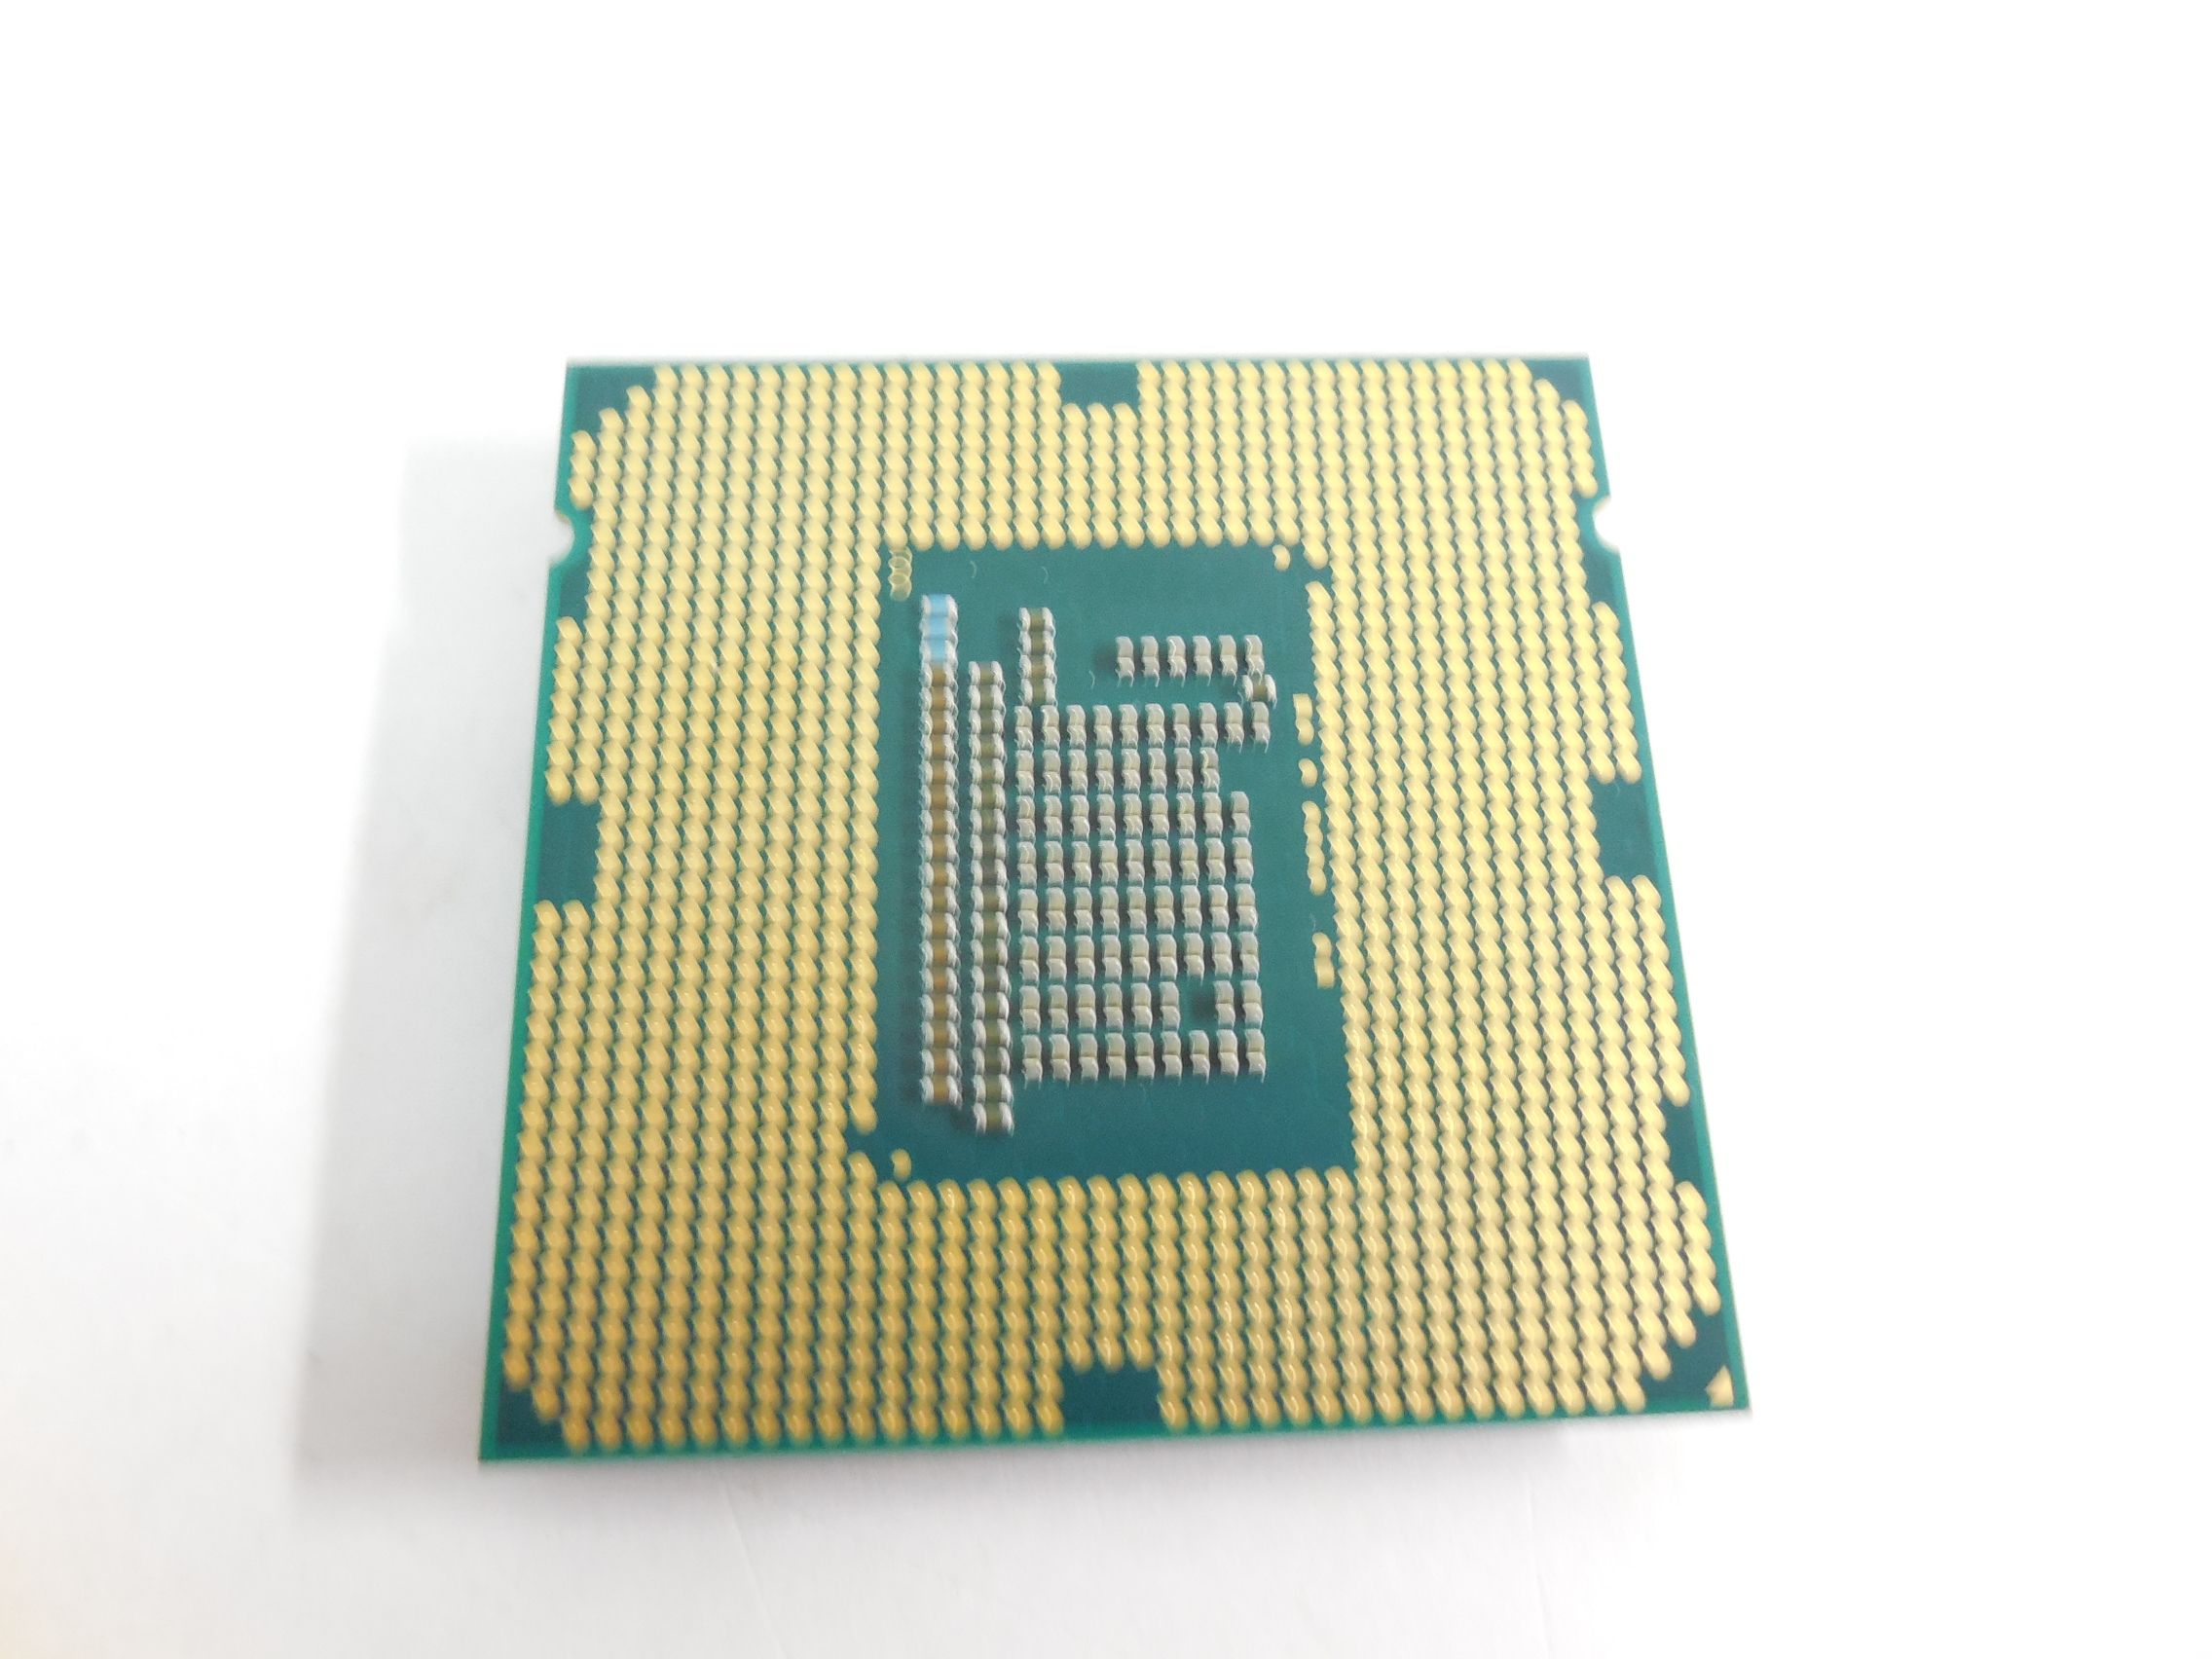 Процессор интел коре i3